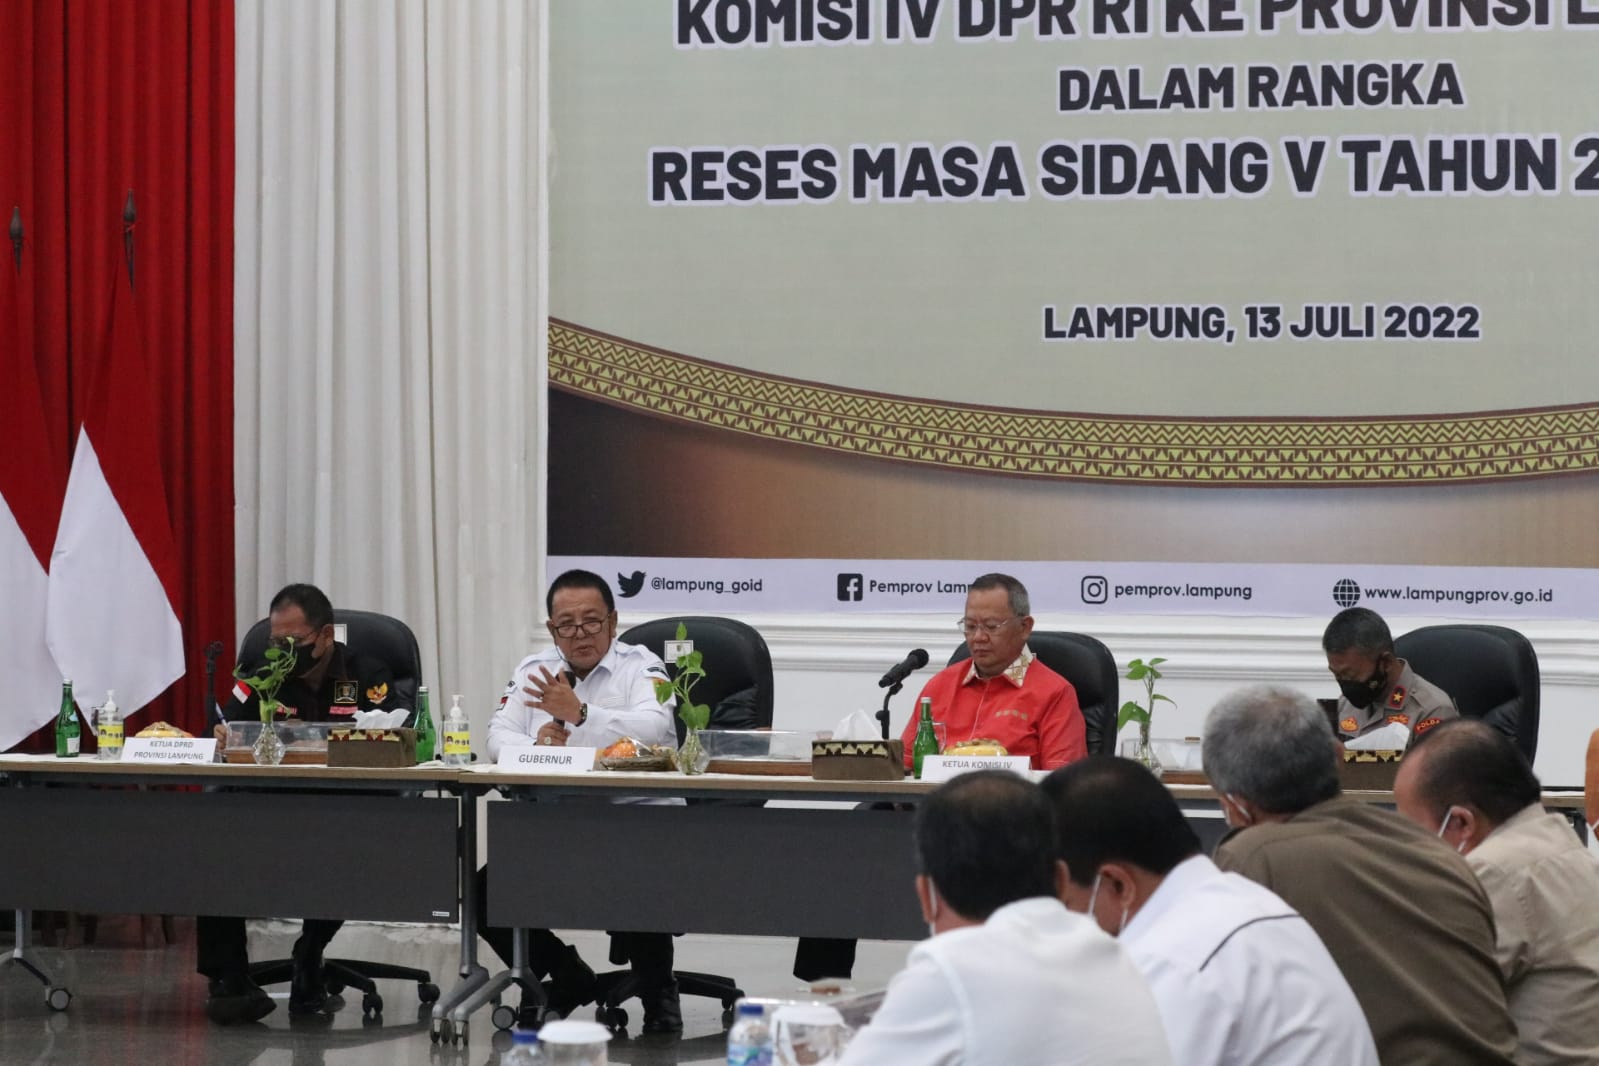 Komisi IV DPR RI Minta BPTP Lampung Membantu Penguatan Kerjasama Inovasi Budidaya Lada untuk Mendukung Revital